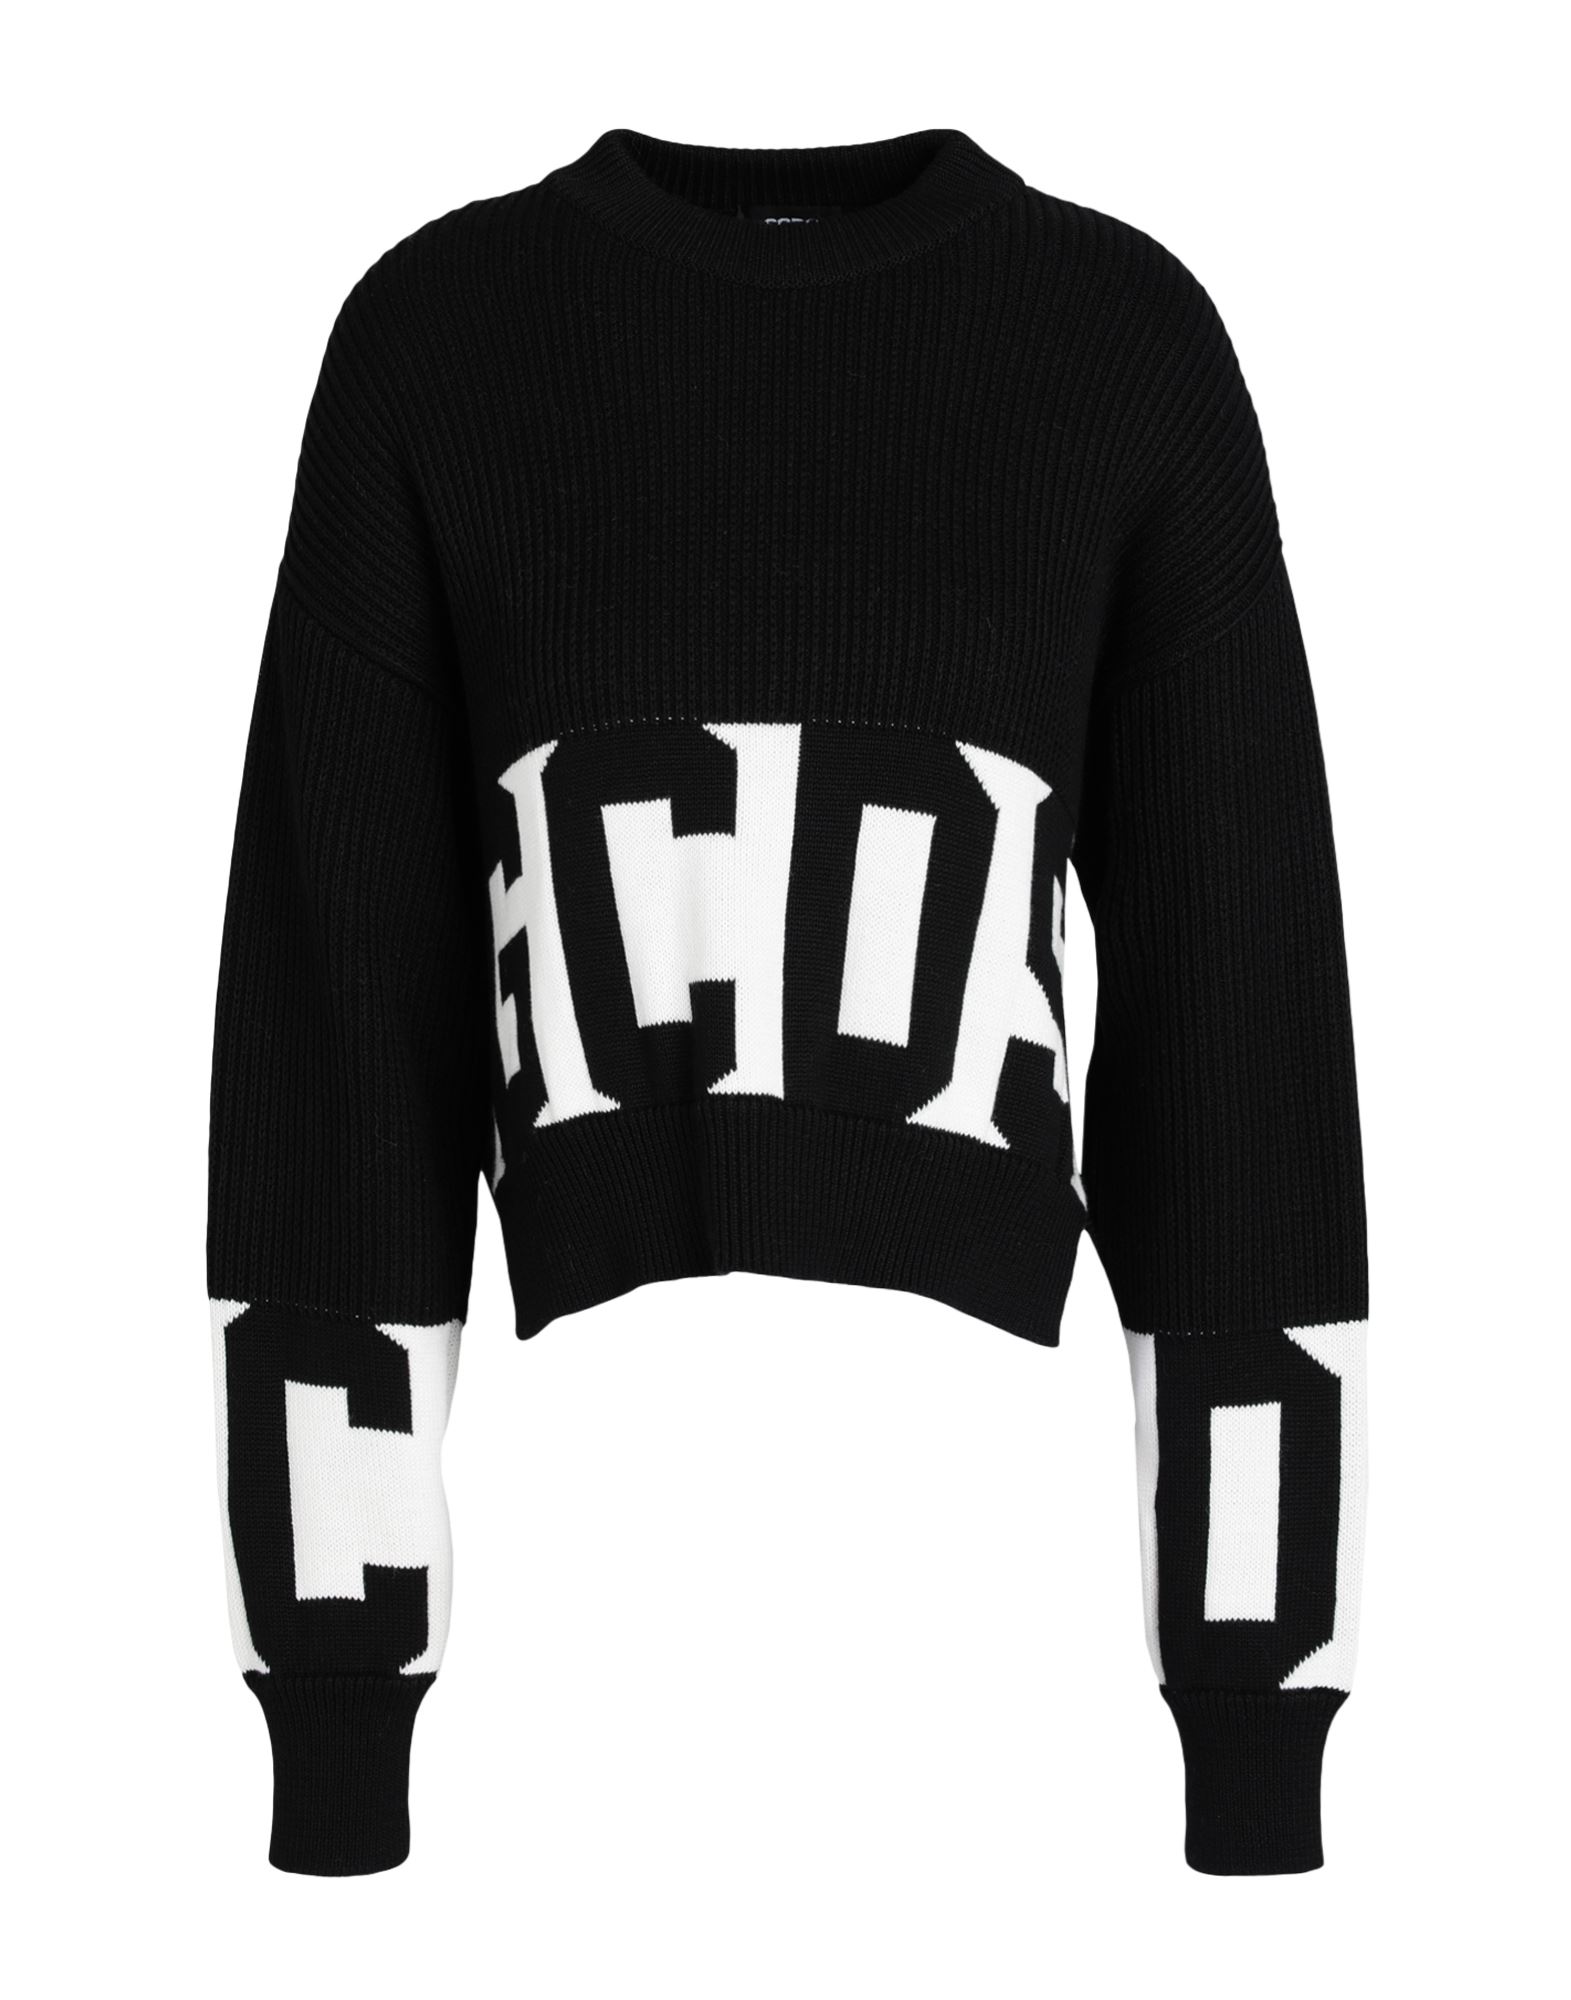 Gcds Sweaters In Black